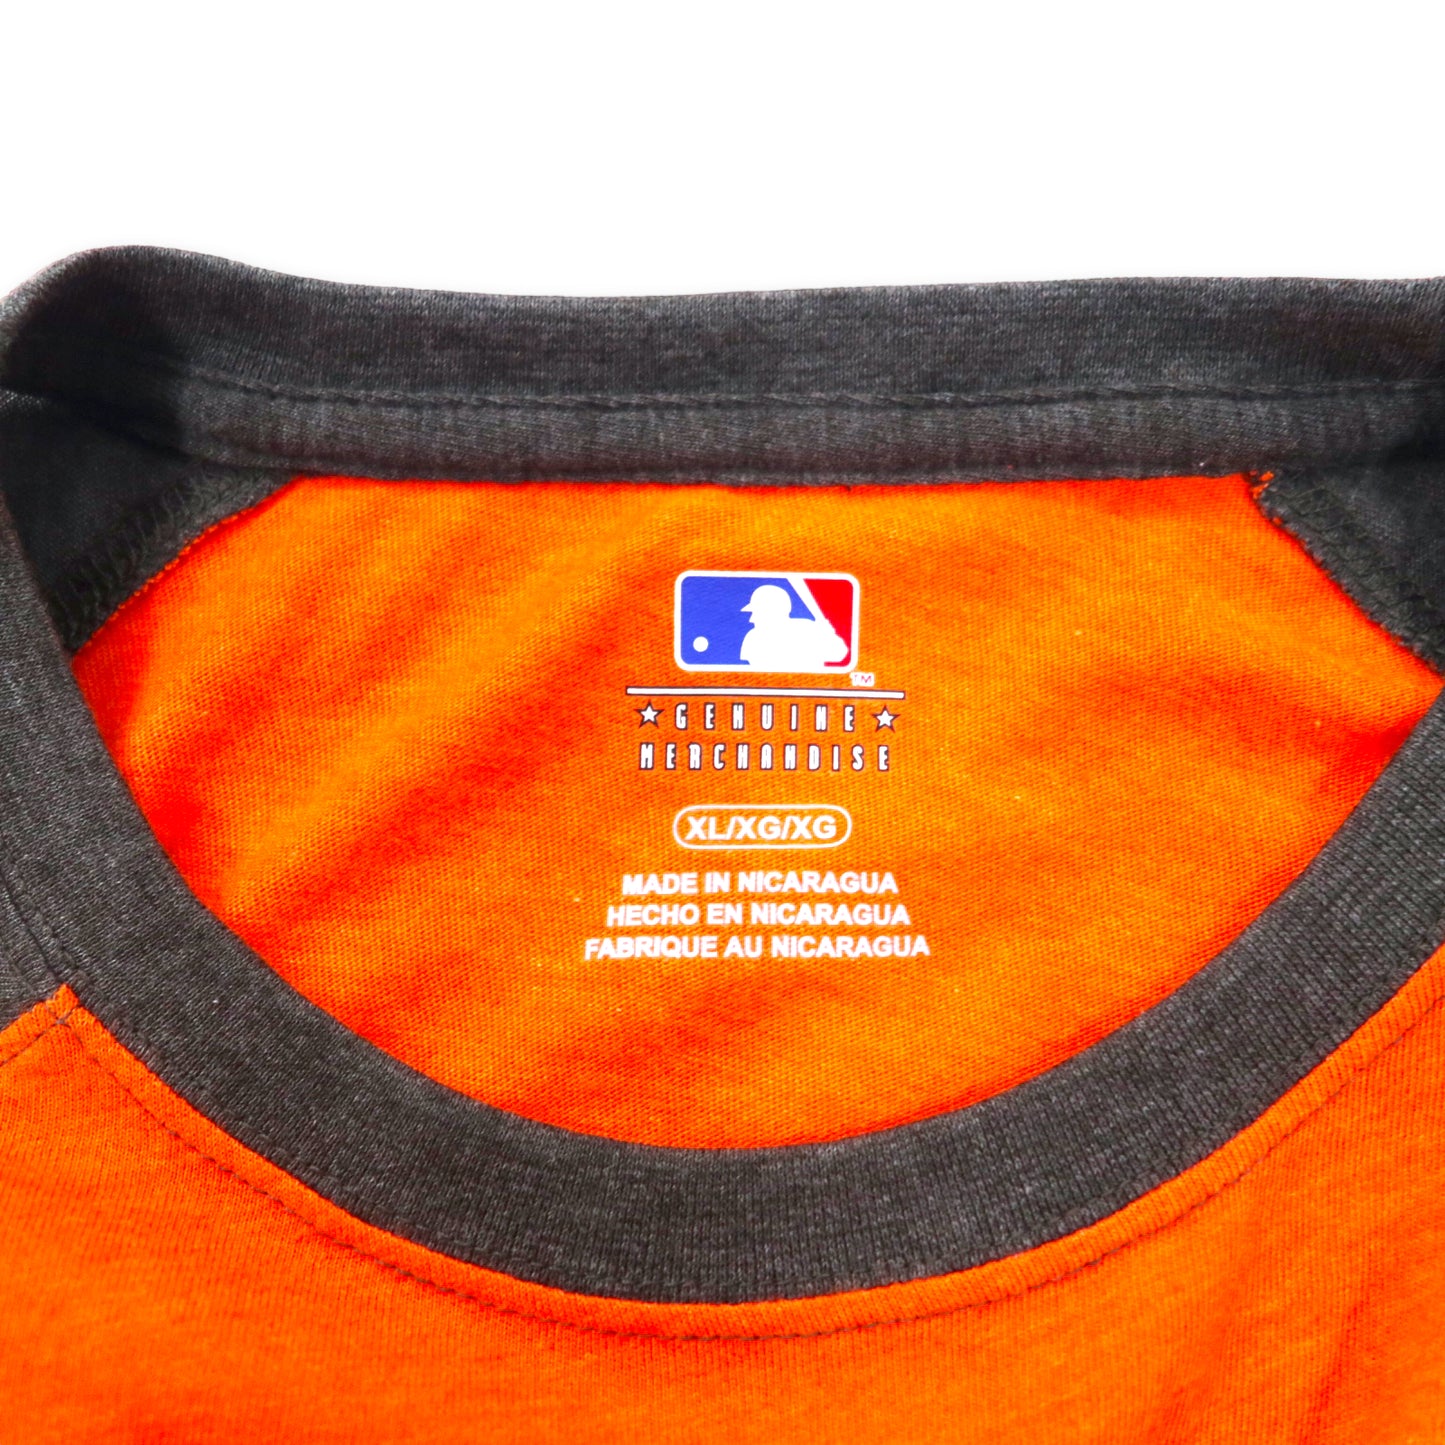 MLB ORIOLES ベースボール ラグランTシャツ XL オレンジ コットン ビッグサイズ